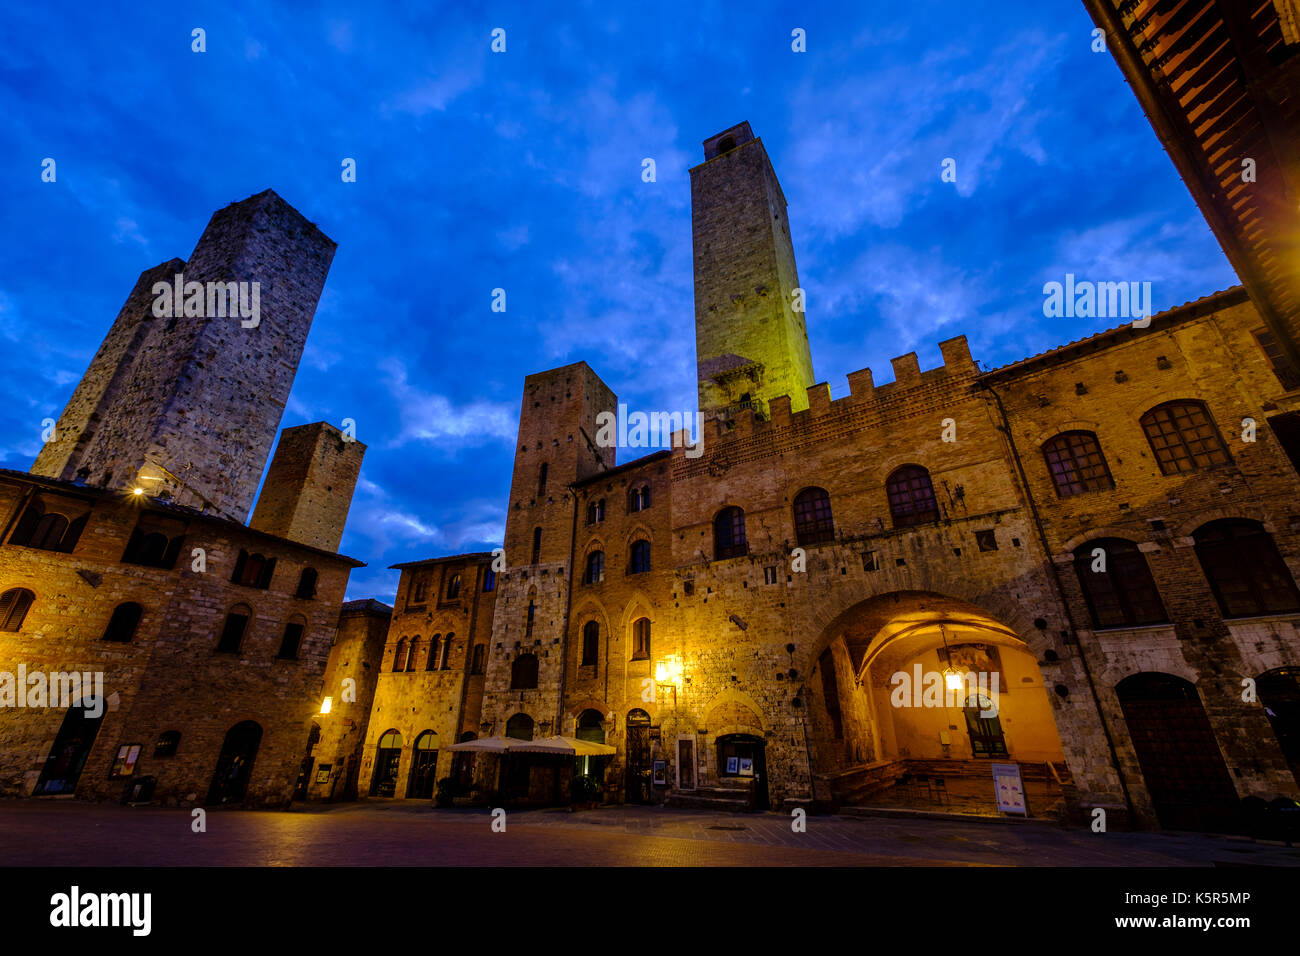 Alten Türmen umschließen den Piazza Duomo in der Mitte der mittelalterlichen Stadt, nachts beleuchtet Stockfoto